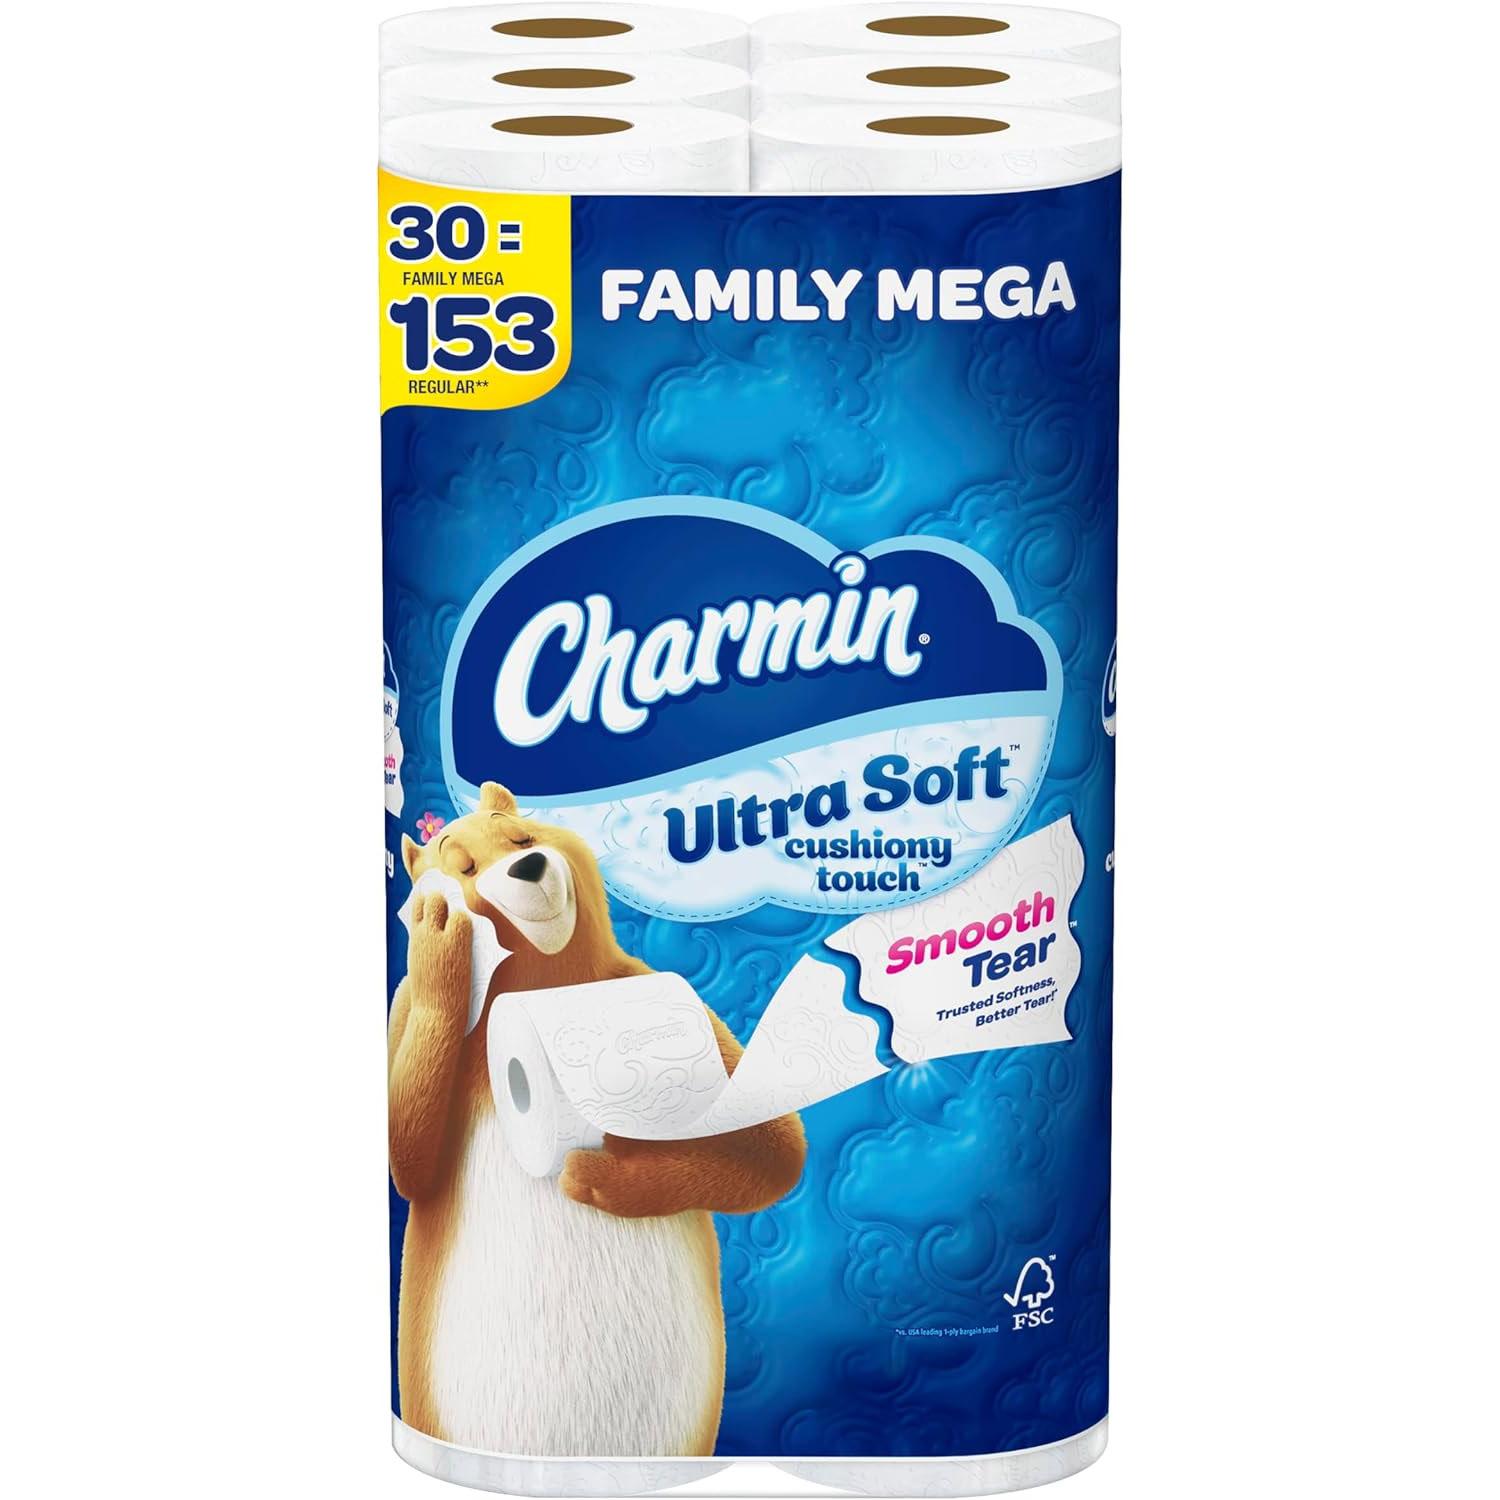 Charmin Family Mega Rolls Toilet Paper 60 Pack for $65.68 Shipped